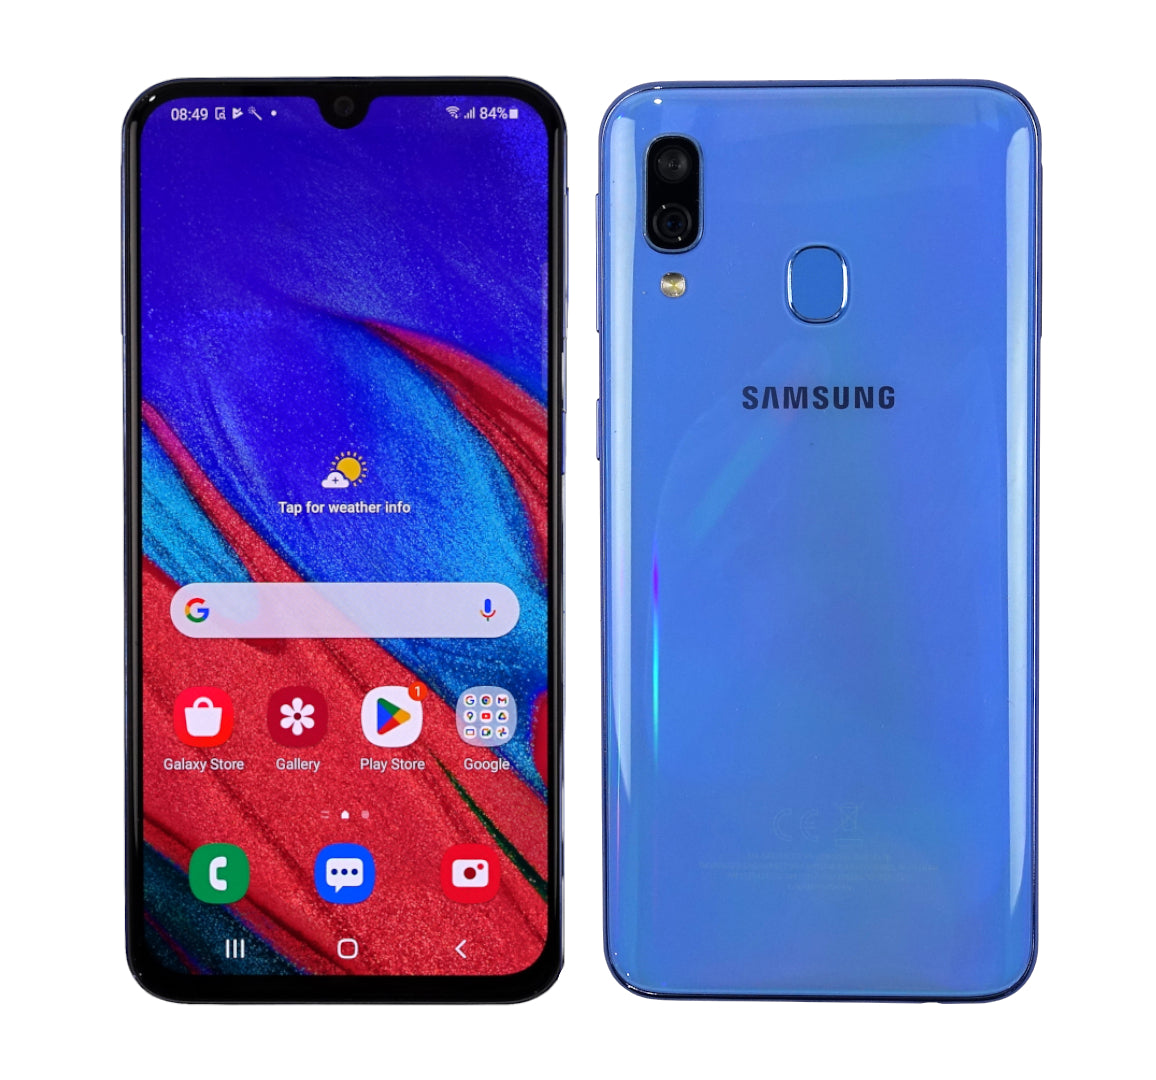 Samsung Galaxy A40 Smartphone, 64GB, Network Unlocked, Blue, SM-A405FN